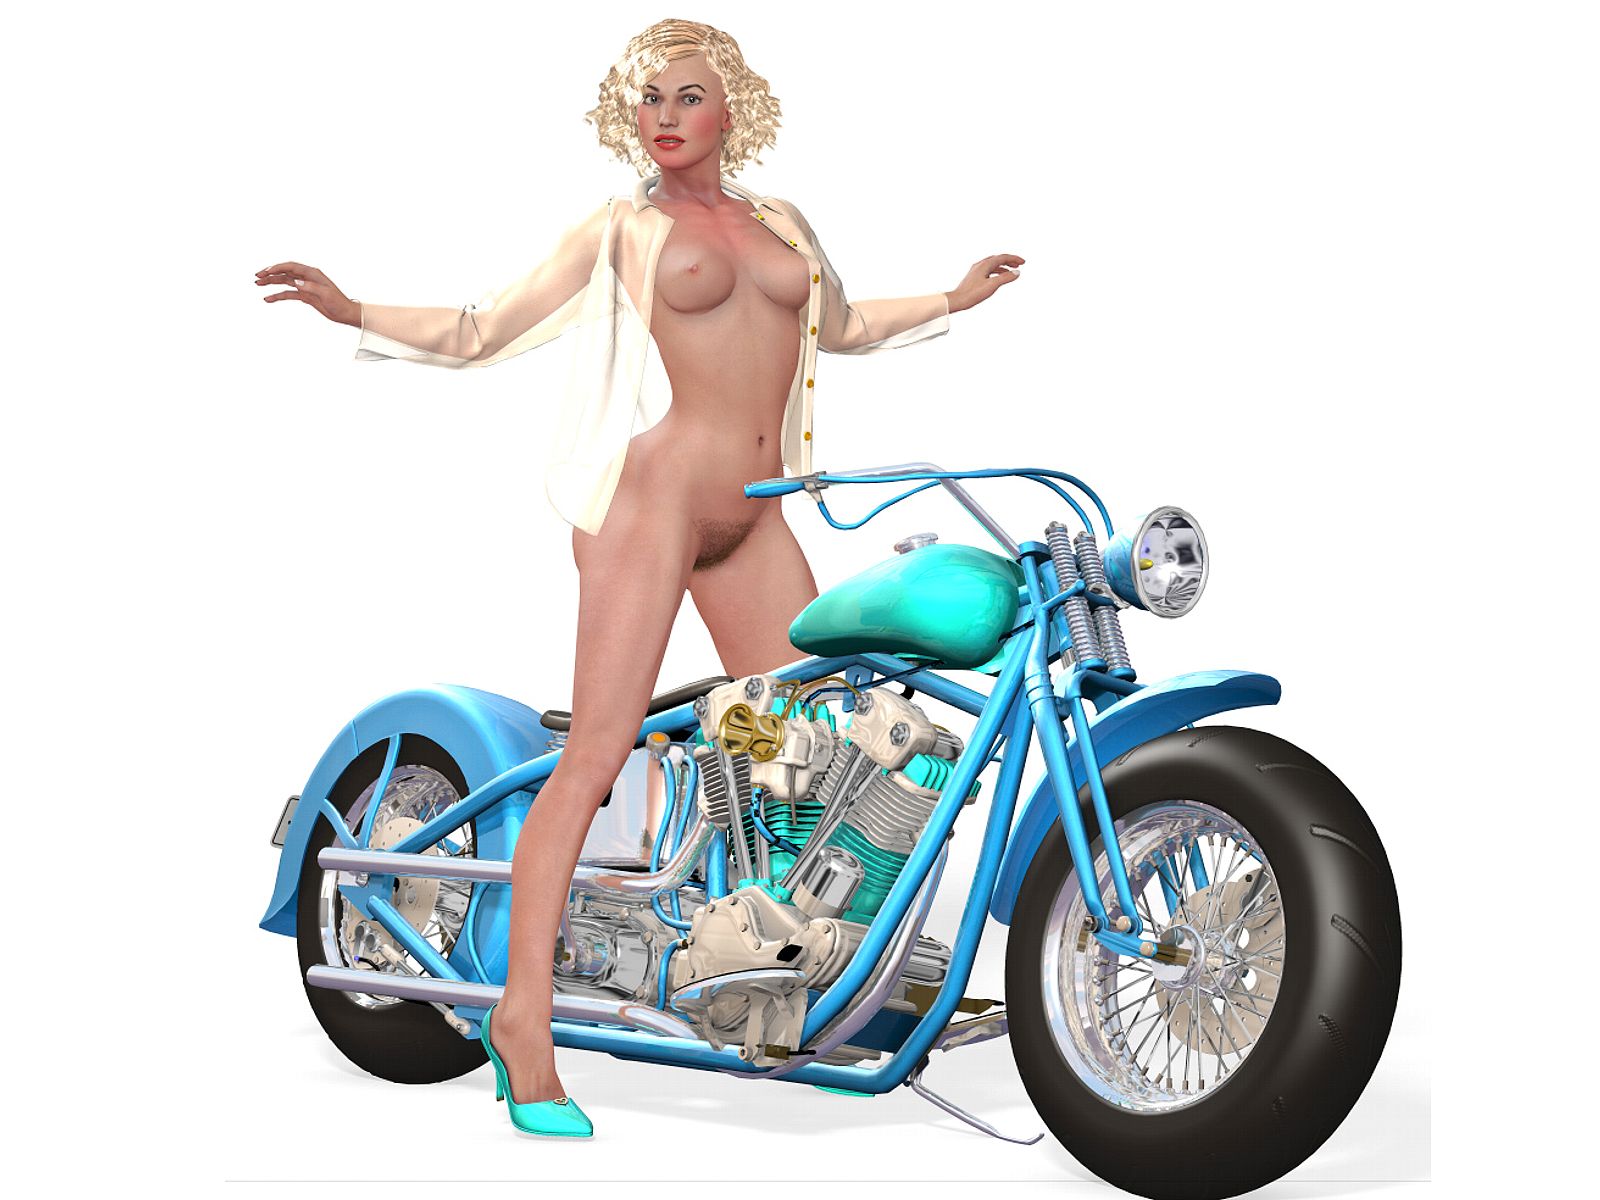 нарисованная девушка, Нарисованные девушки обои для рабочего стола. голая девушка с волосатым лобком на мотоцикле